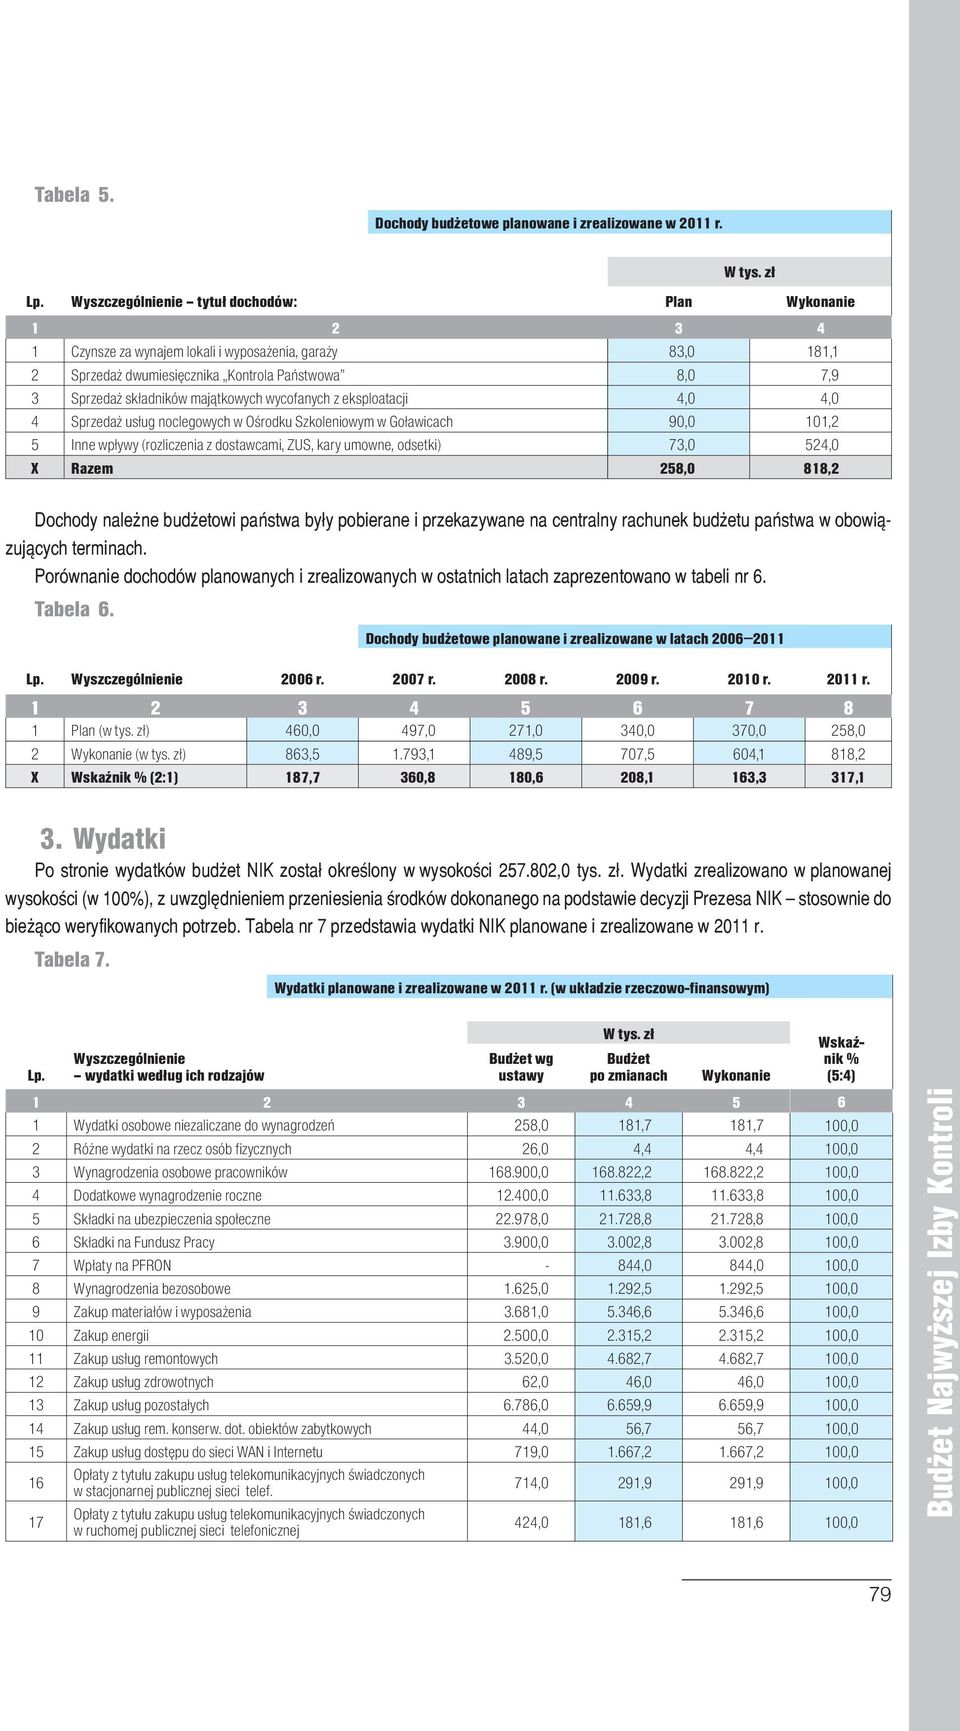 4,0 4 Sprzedaż usług noclegowych w Ośrodku Szkoleniowym w Goławicach 90,0 101,2 5 Inne wpływy (rozliczenia z dostawcami, ZUS, kary umowne, odsetki) 73,0 524,0 X Razem 258,0 818,2 Dochody należne